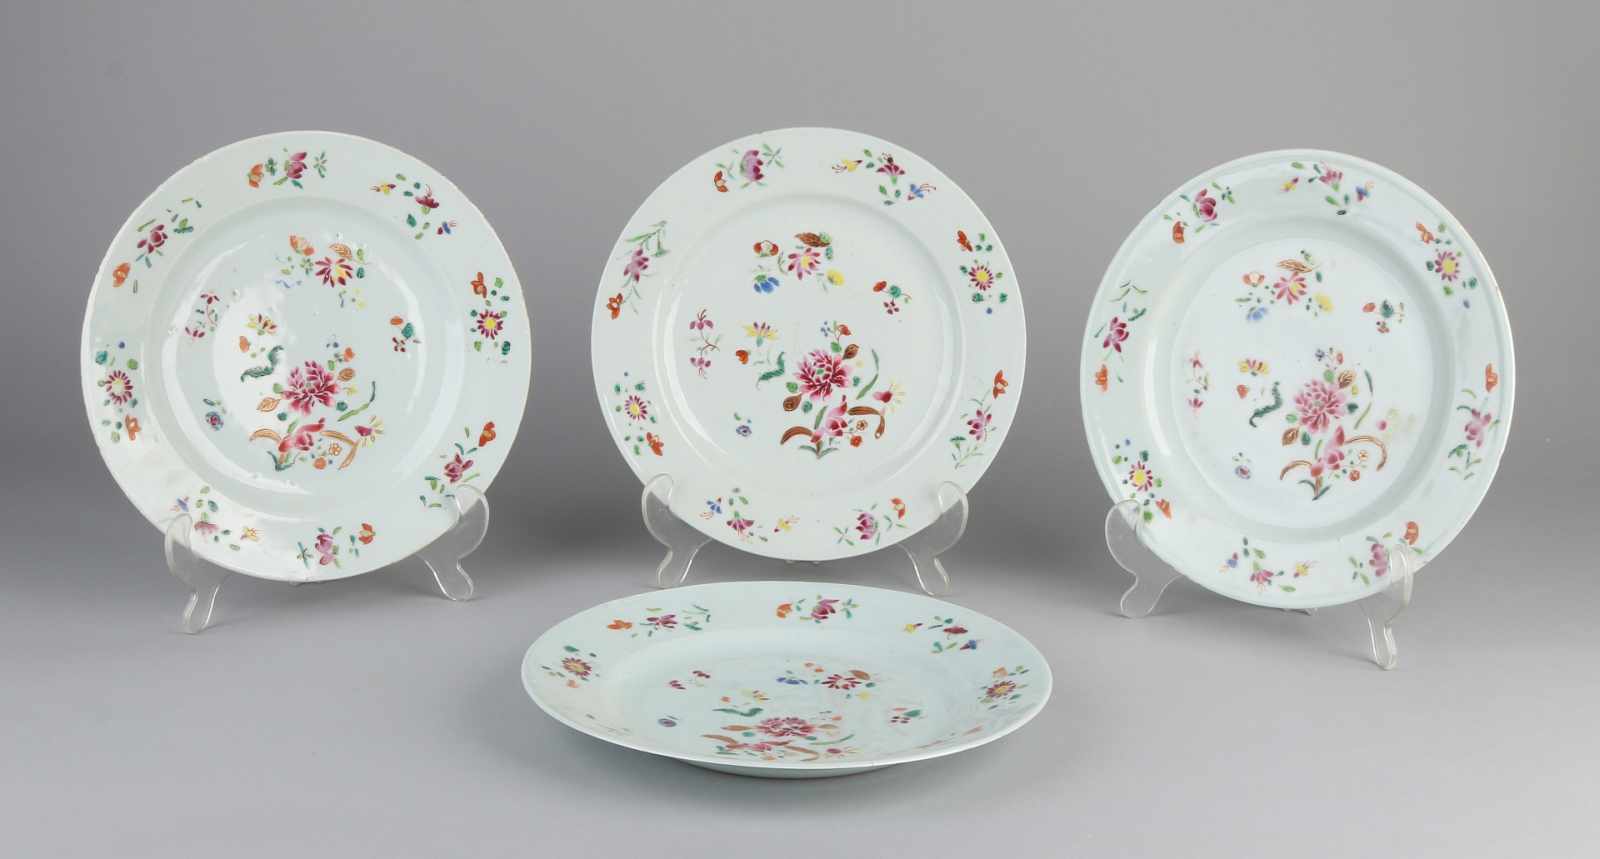 Vier chinesische Porzellanteller aus dem 18. Jahrhundert mit Blumendekor. Eine Platte Haarriss, eine